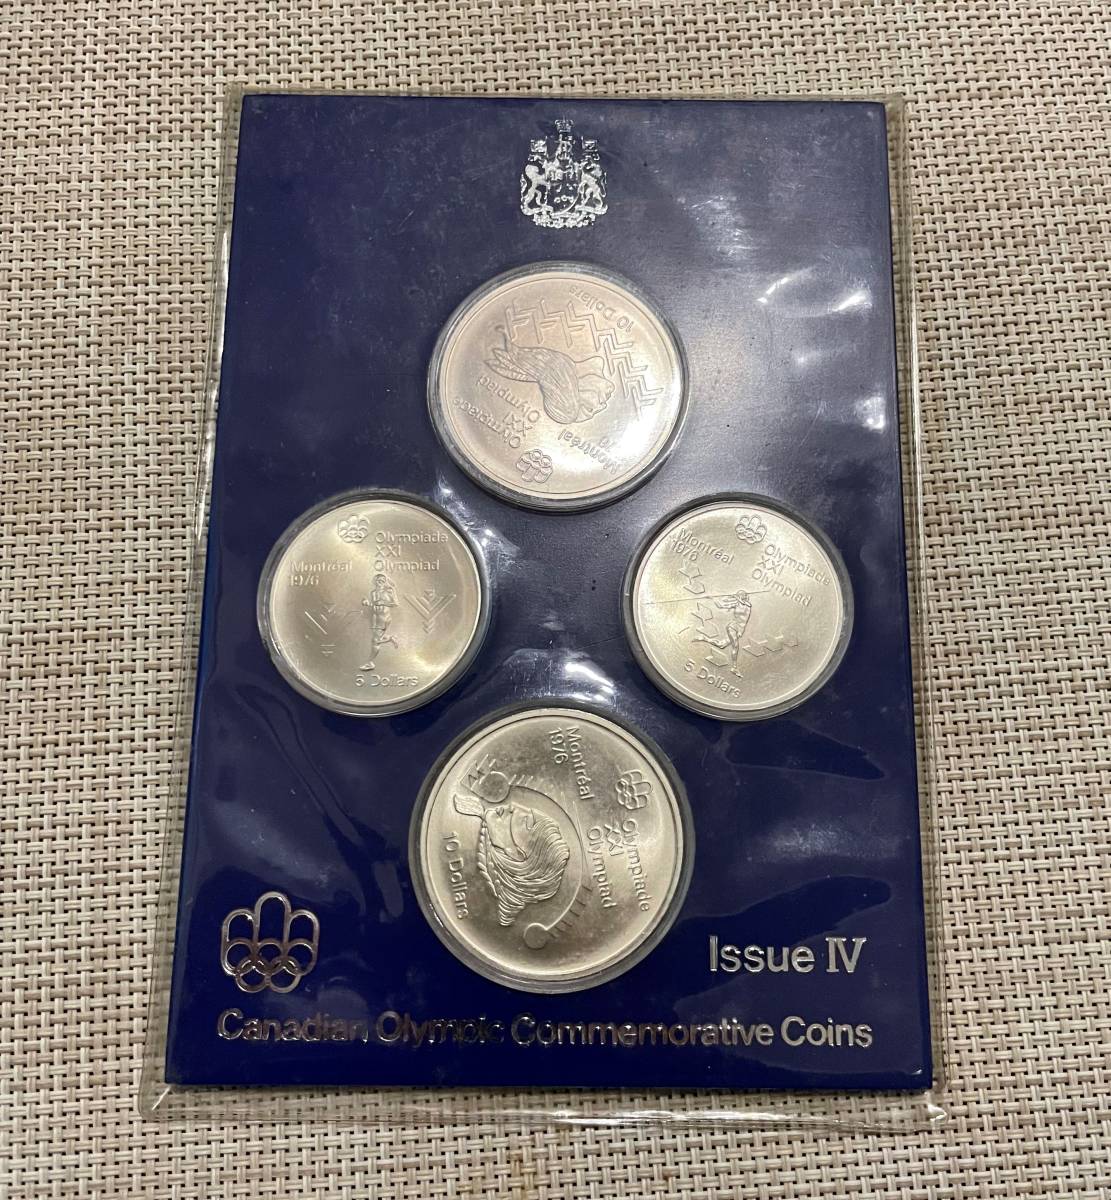 お値下げ商品 1976年カナダモントリオールオリンピック記念銀貨プルーフセット その他